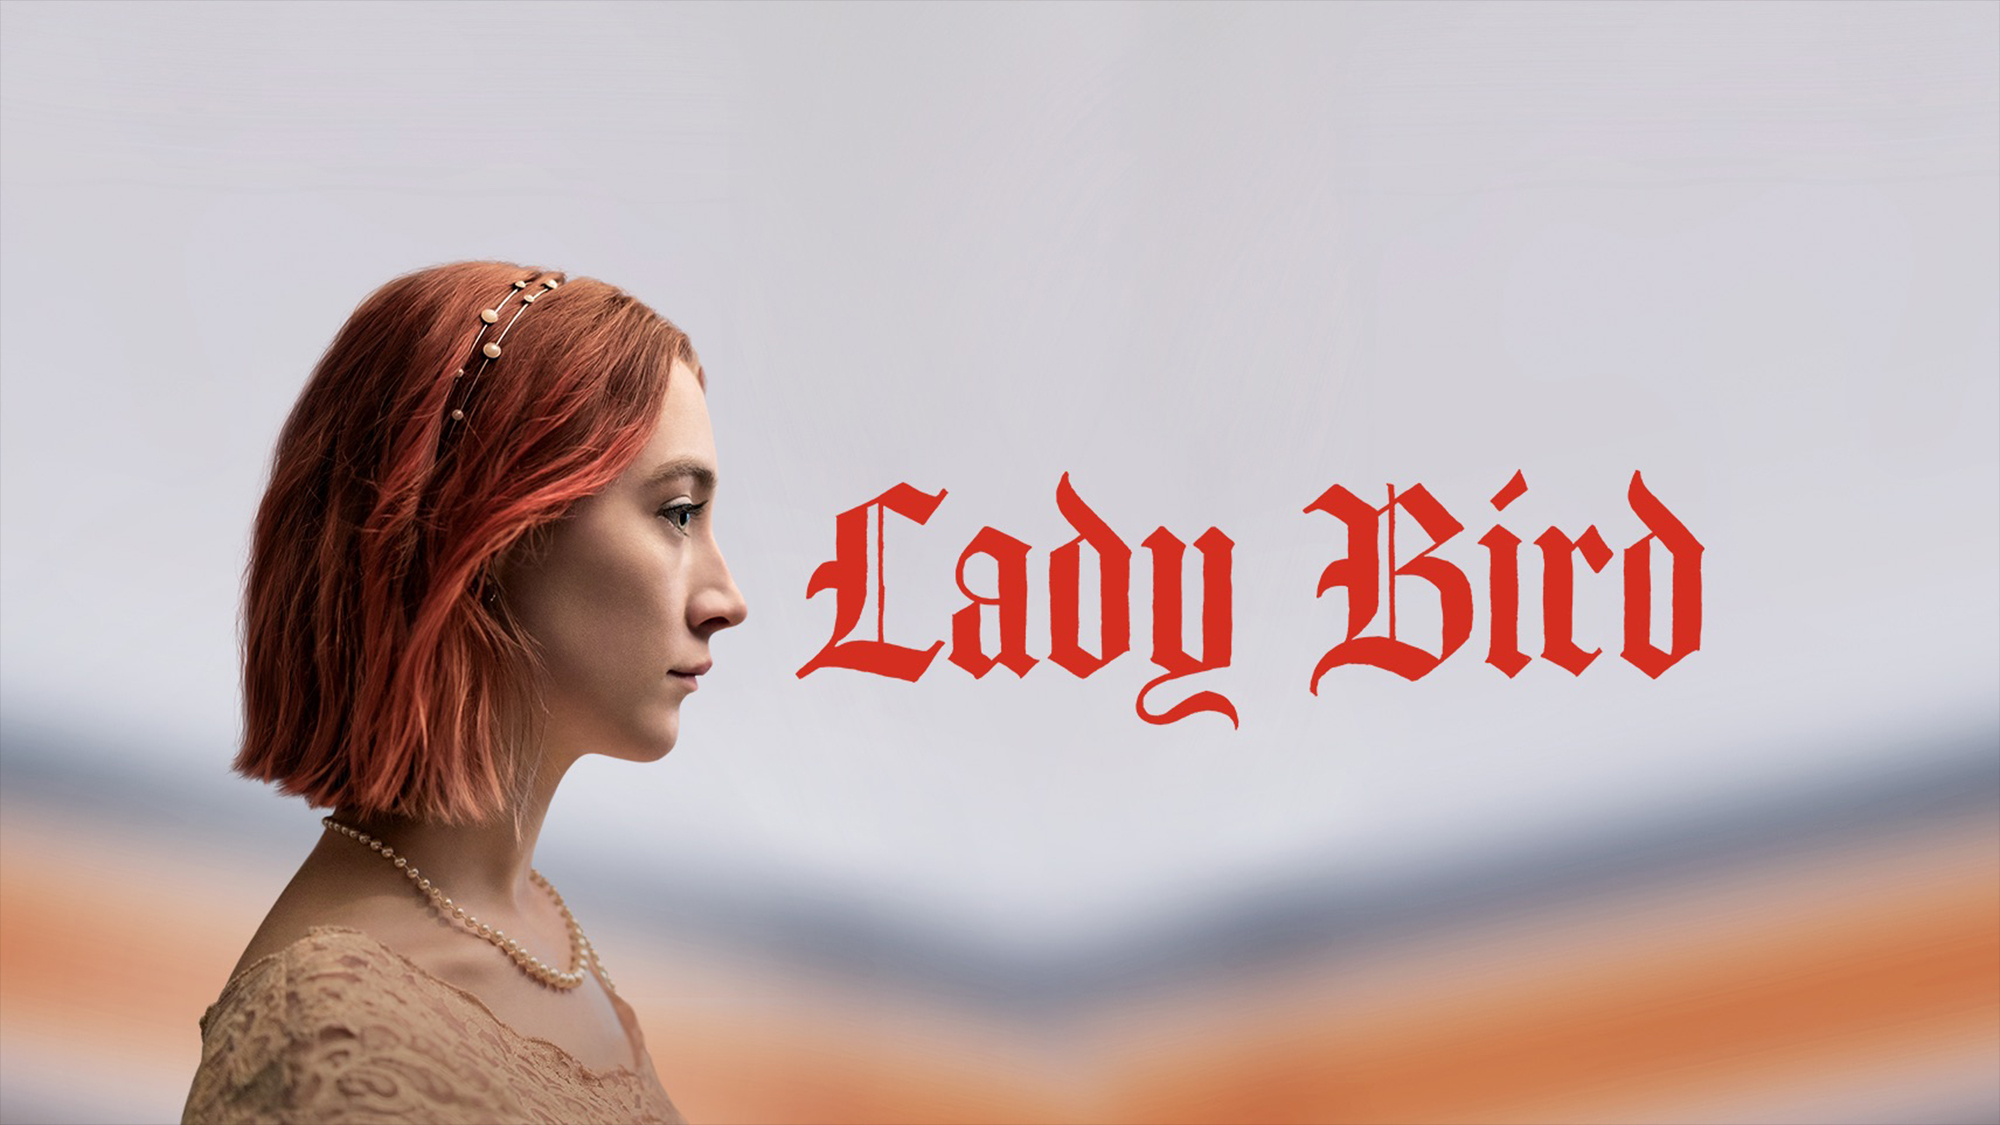 Laden Sie Lady Bird HD-Desktop-Hintergründe herunter